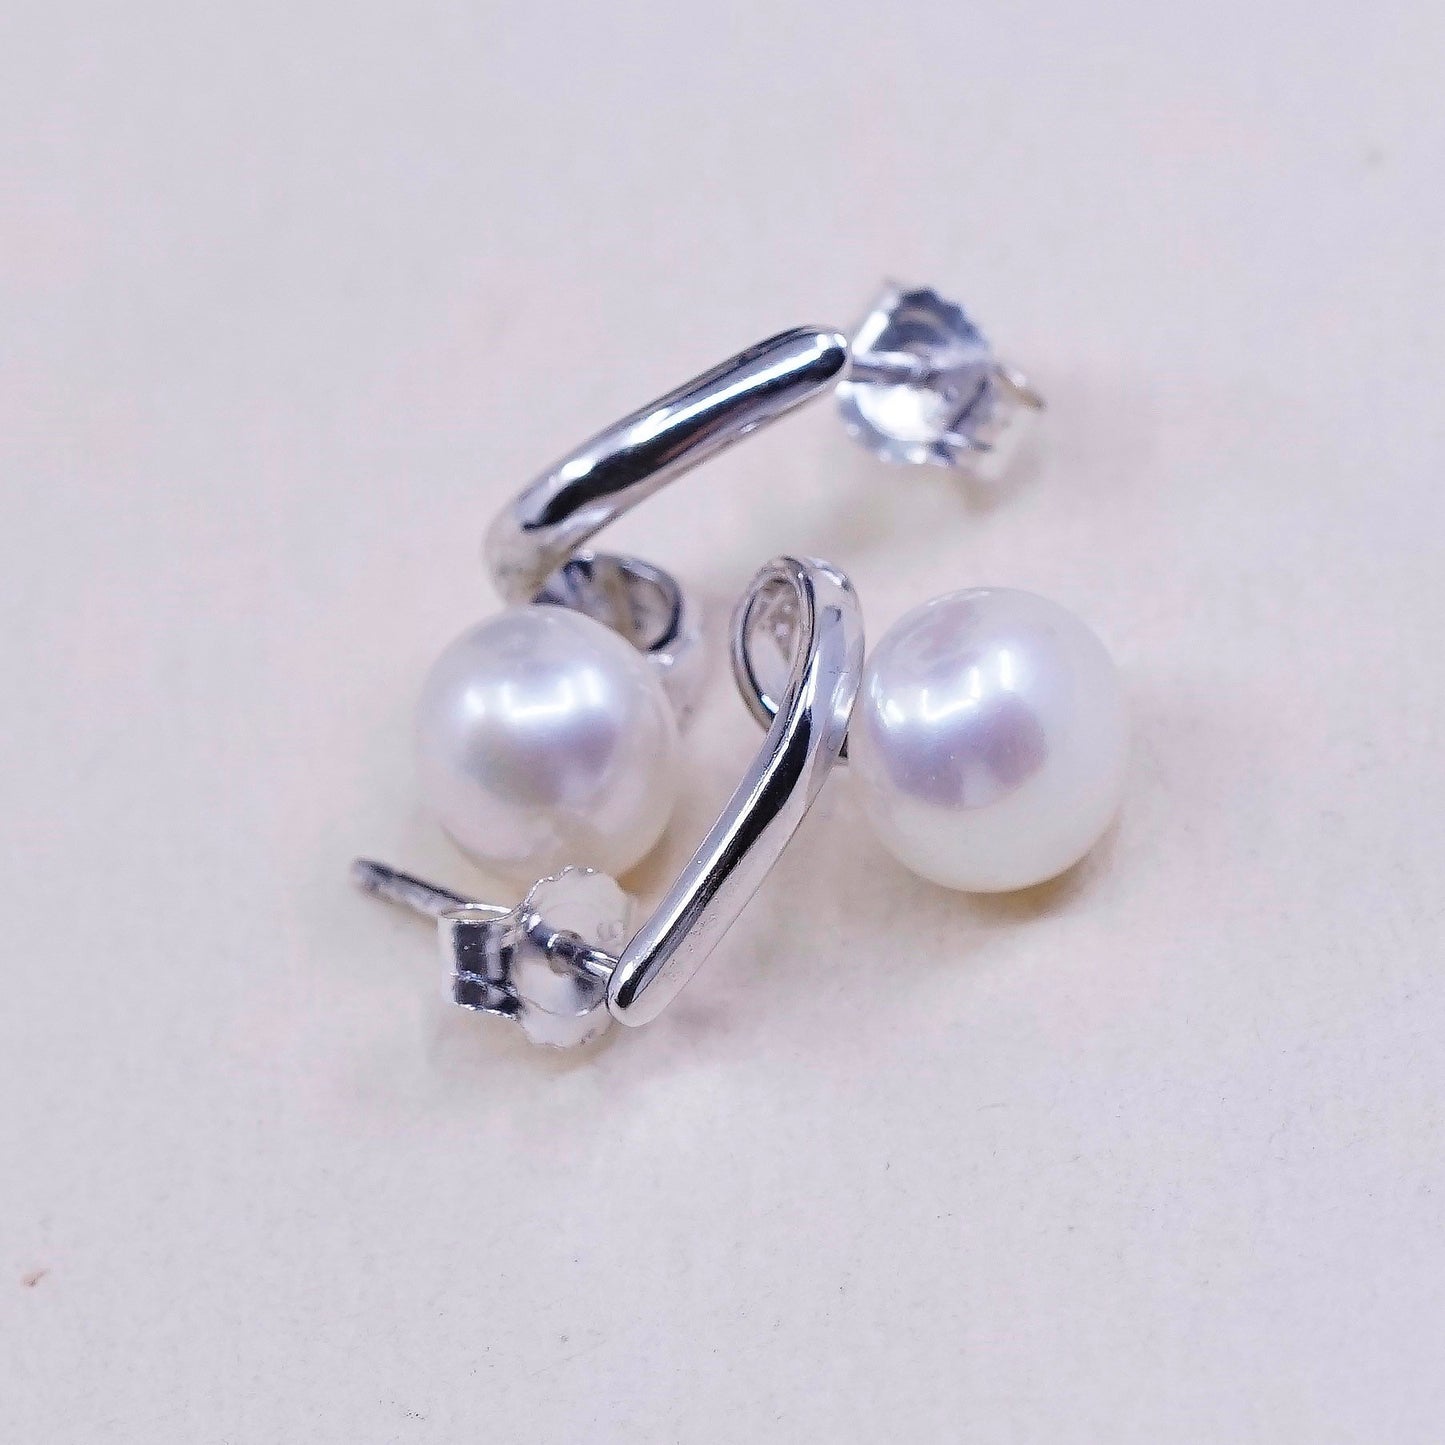 Vintage handmade sterling silver freshwater pearl earrings, 925 studs